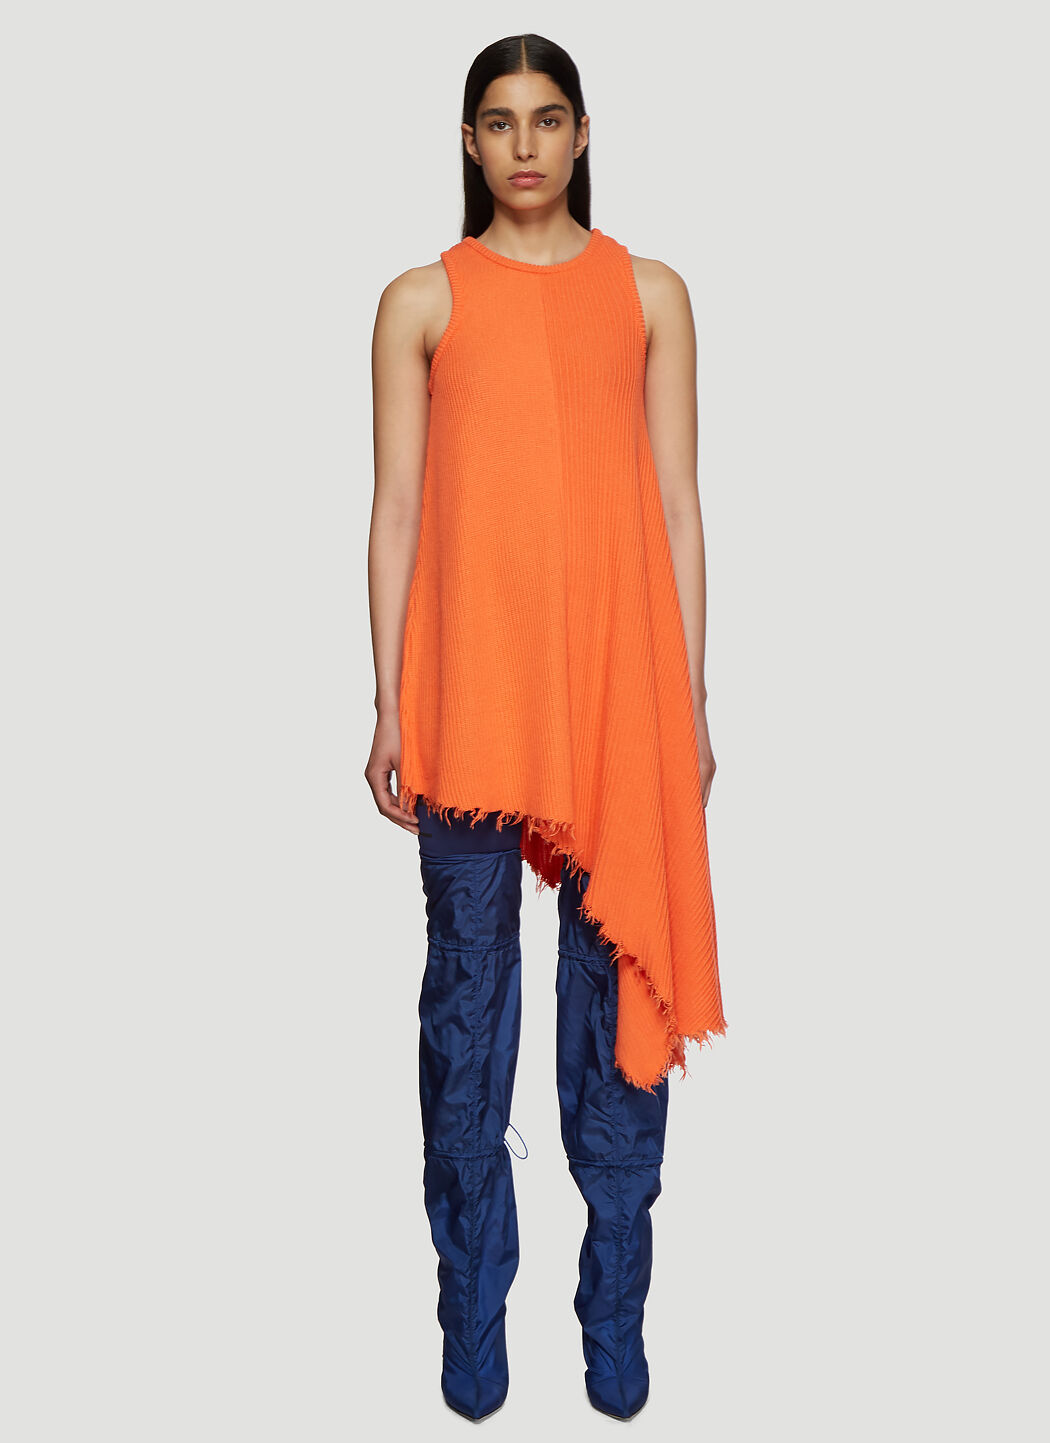 Malibu Sandals Asymmetric Ribbed Knit Tank Dress Beige mlb0136001